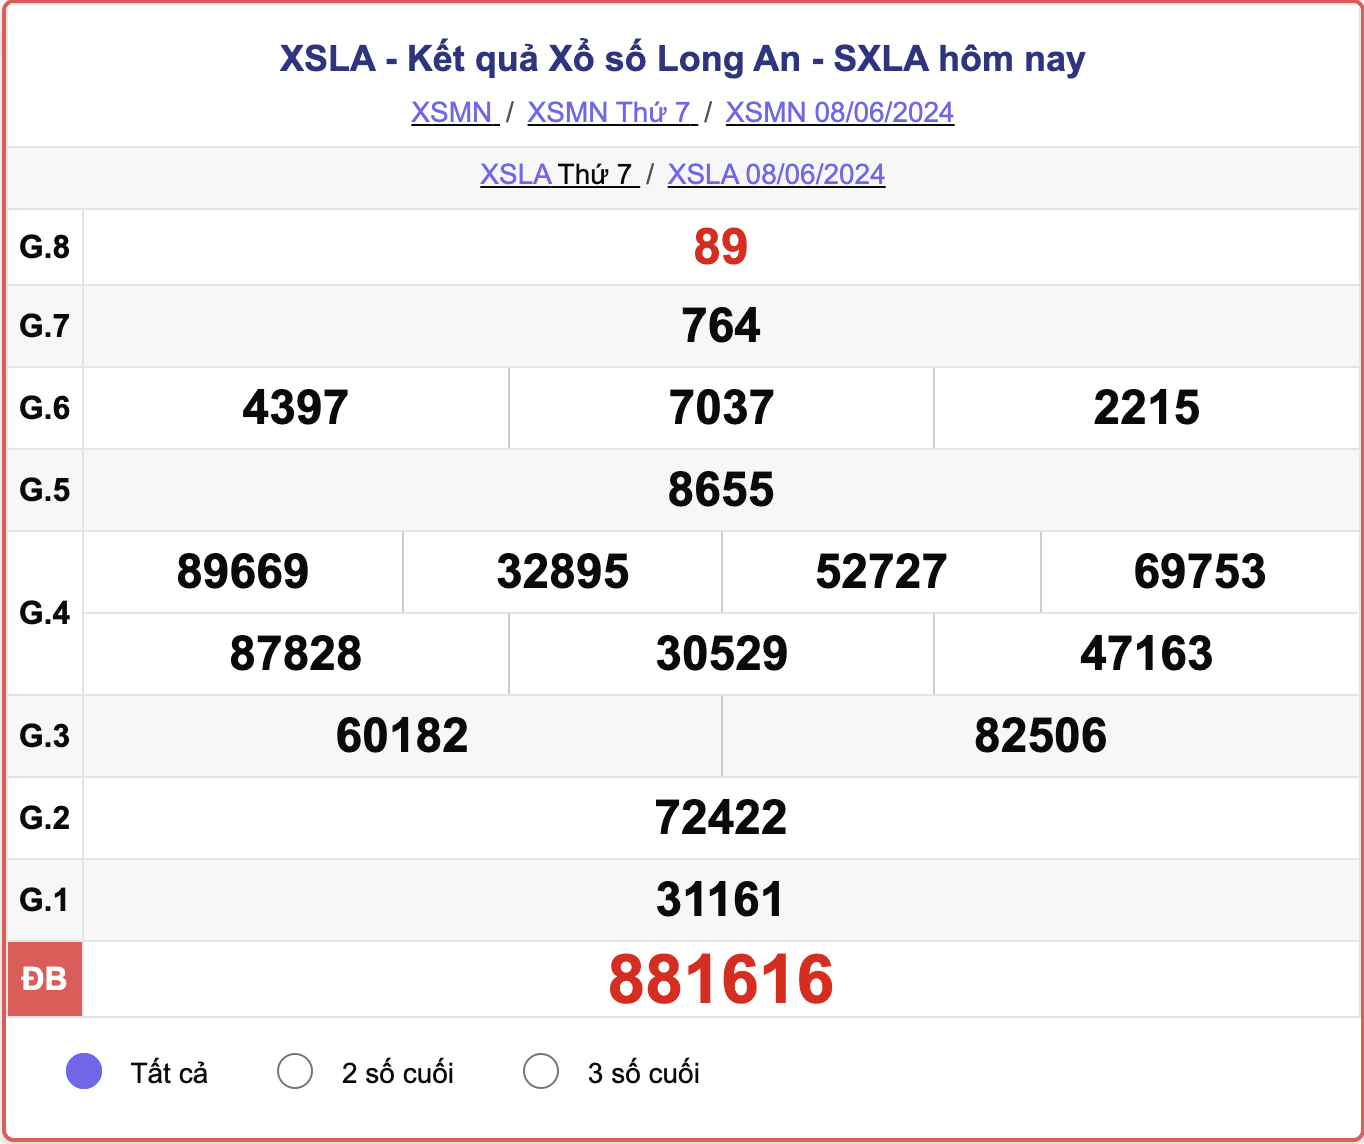 XSLA 8/6, kết quả xổ số Long An hômn nay 8/6/2024.